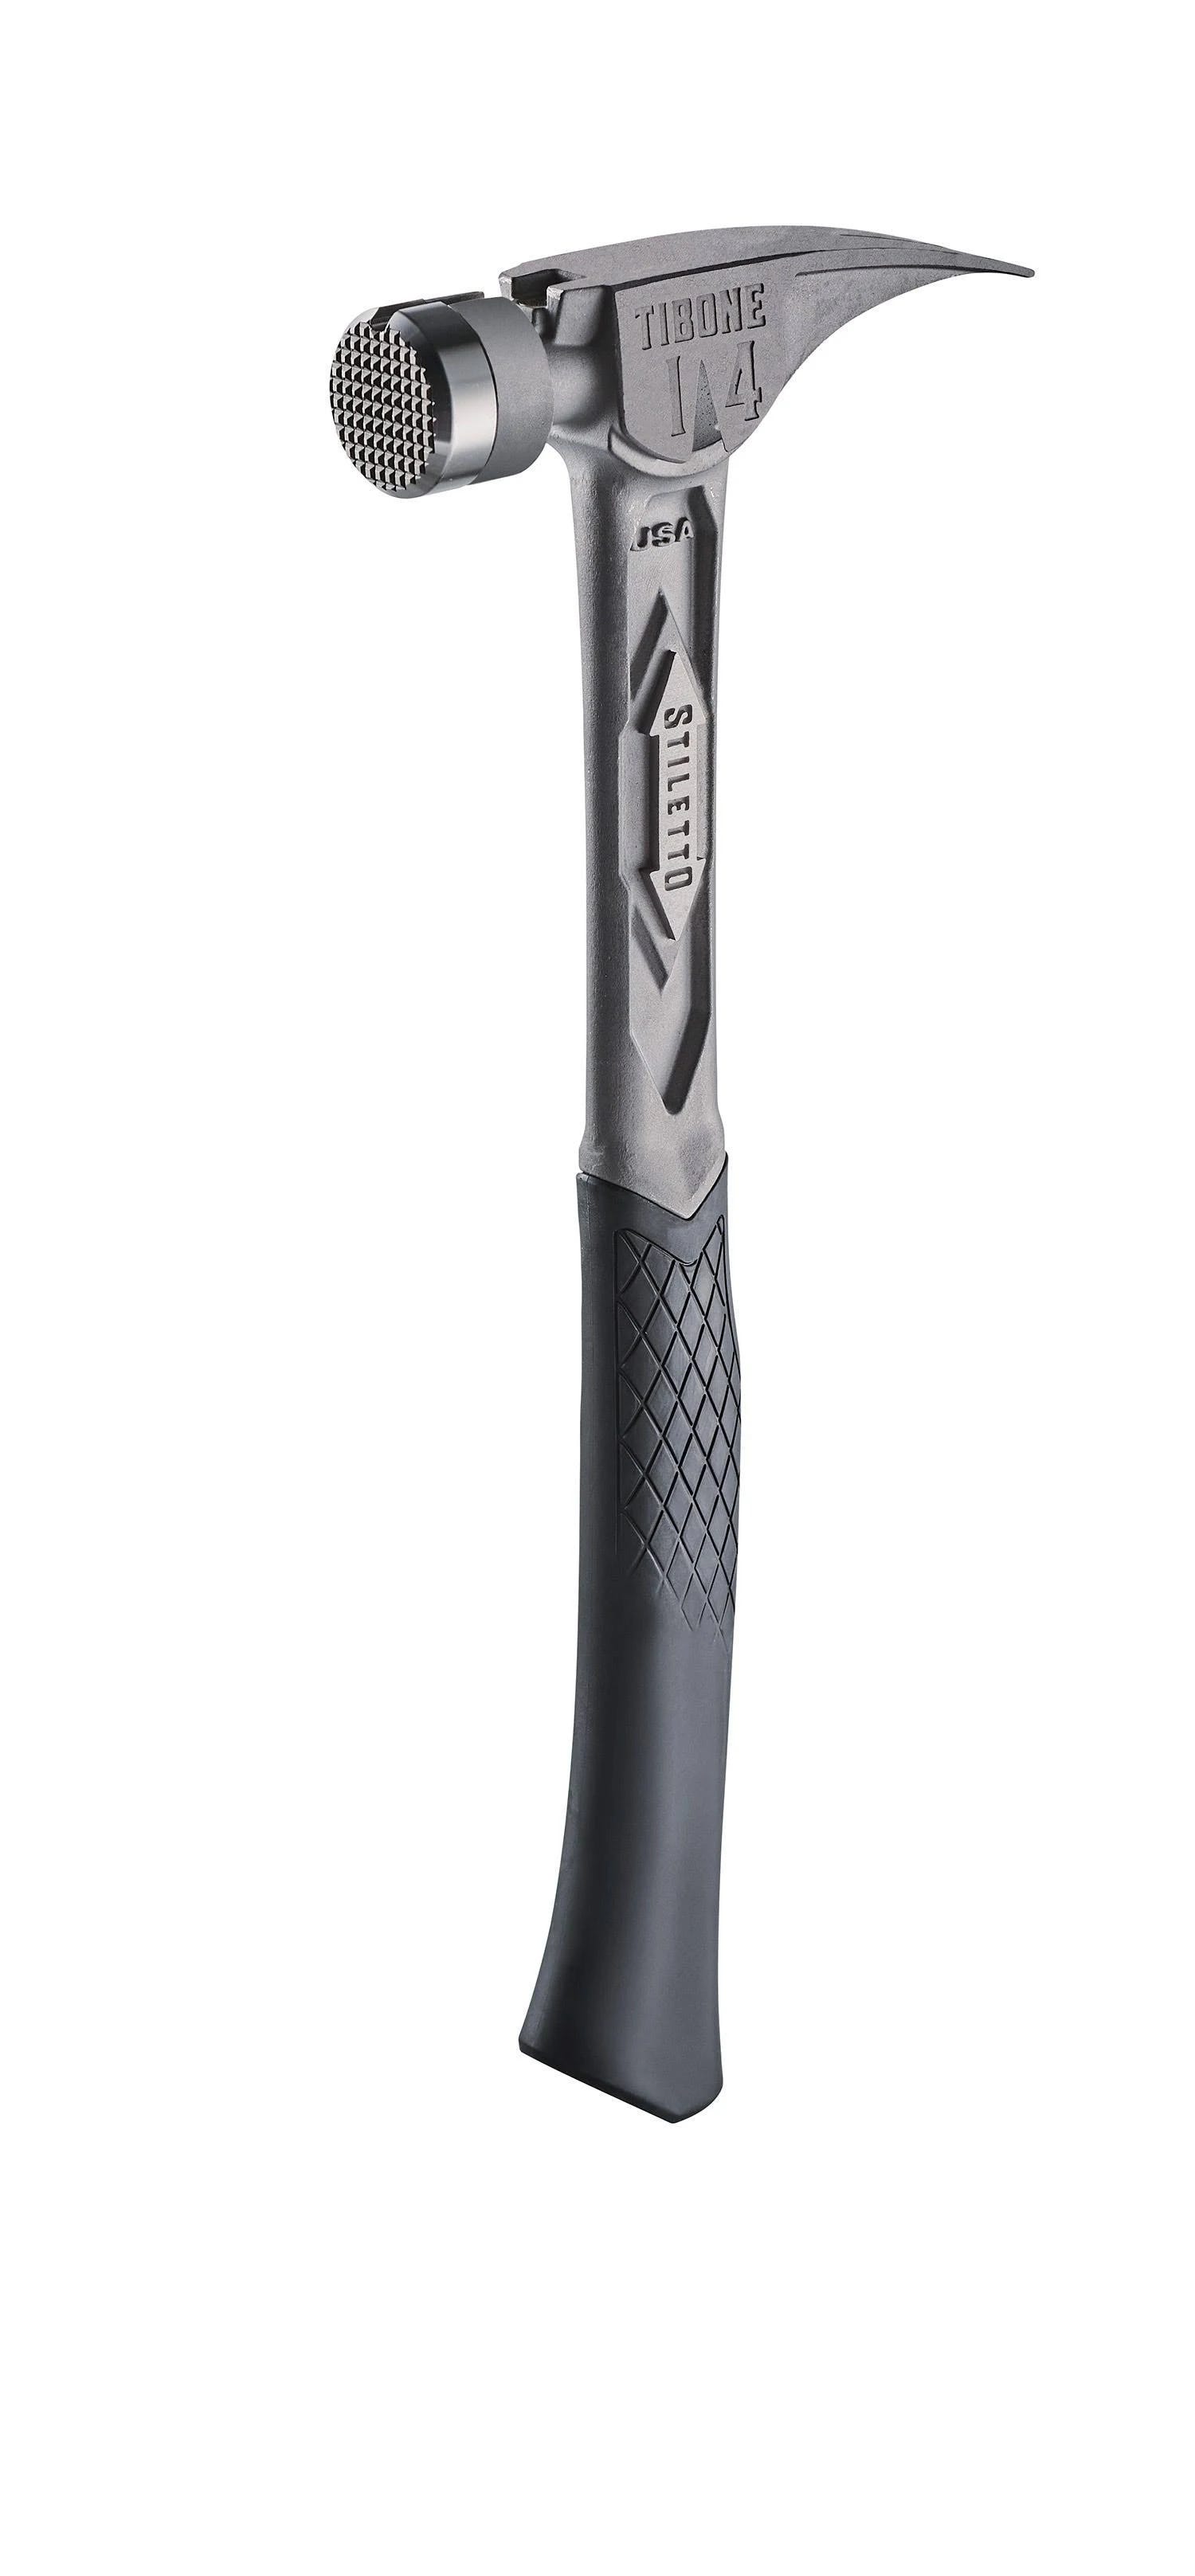 Stiletto 14 oz Titanium Curved Hammer | Image